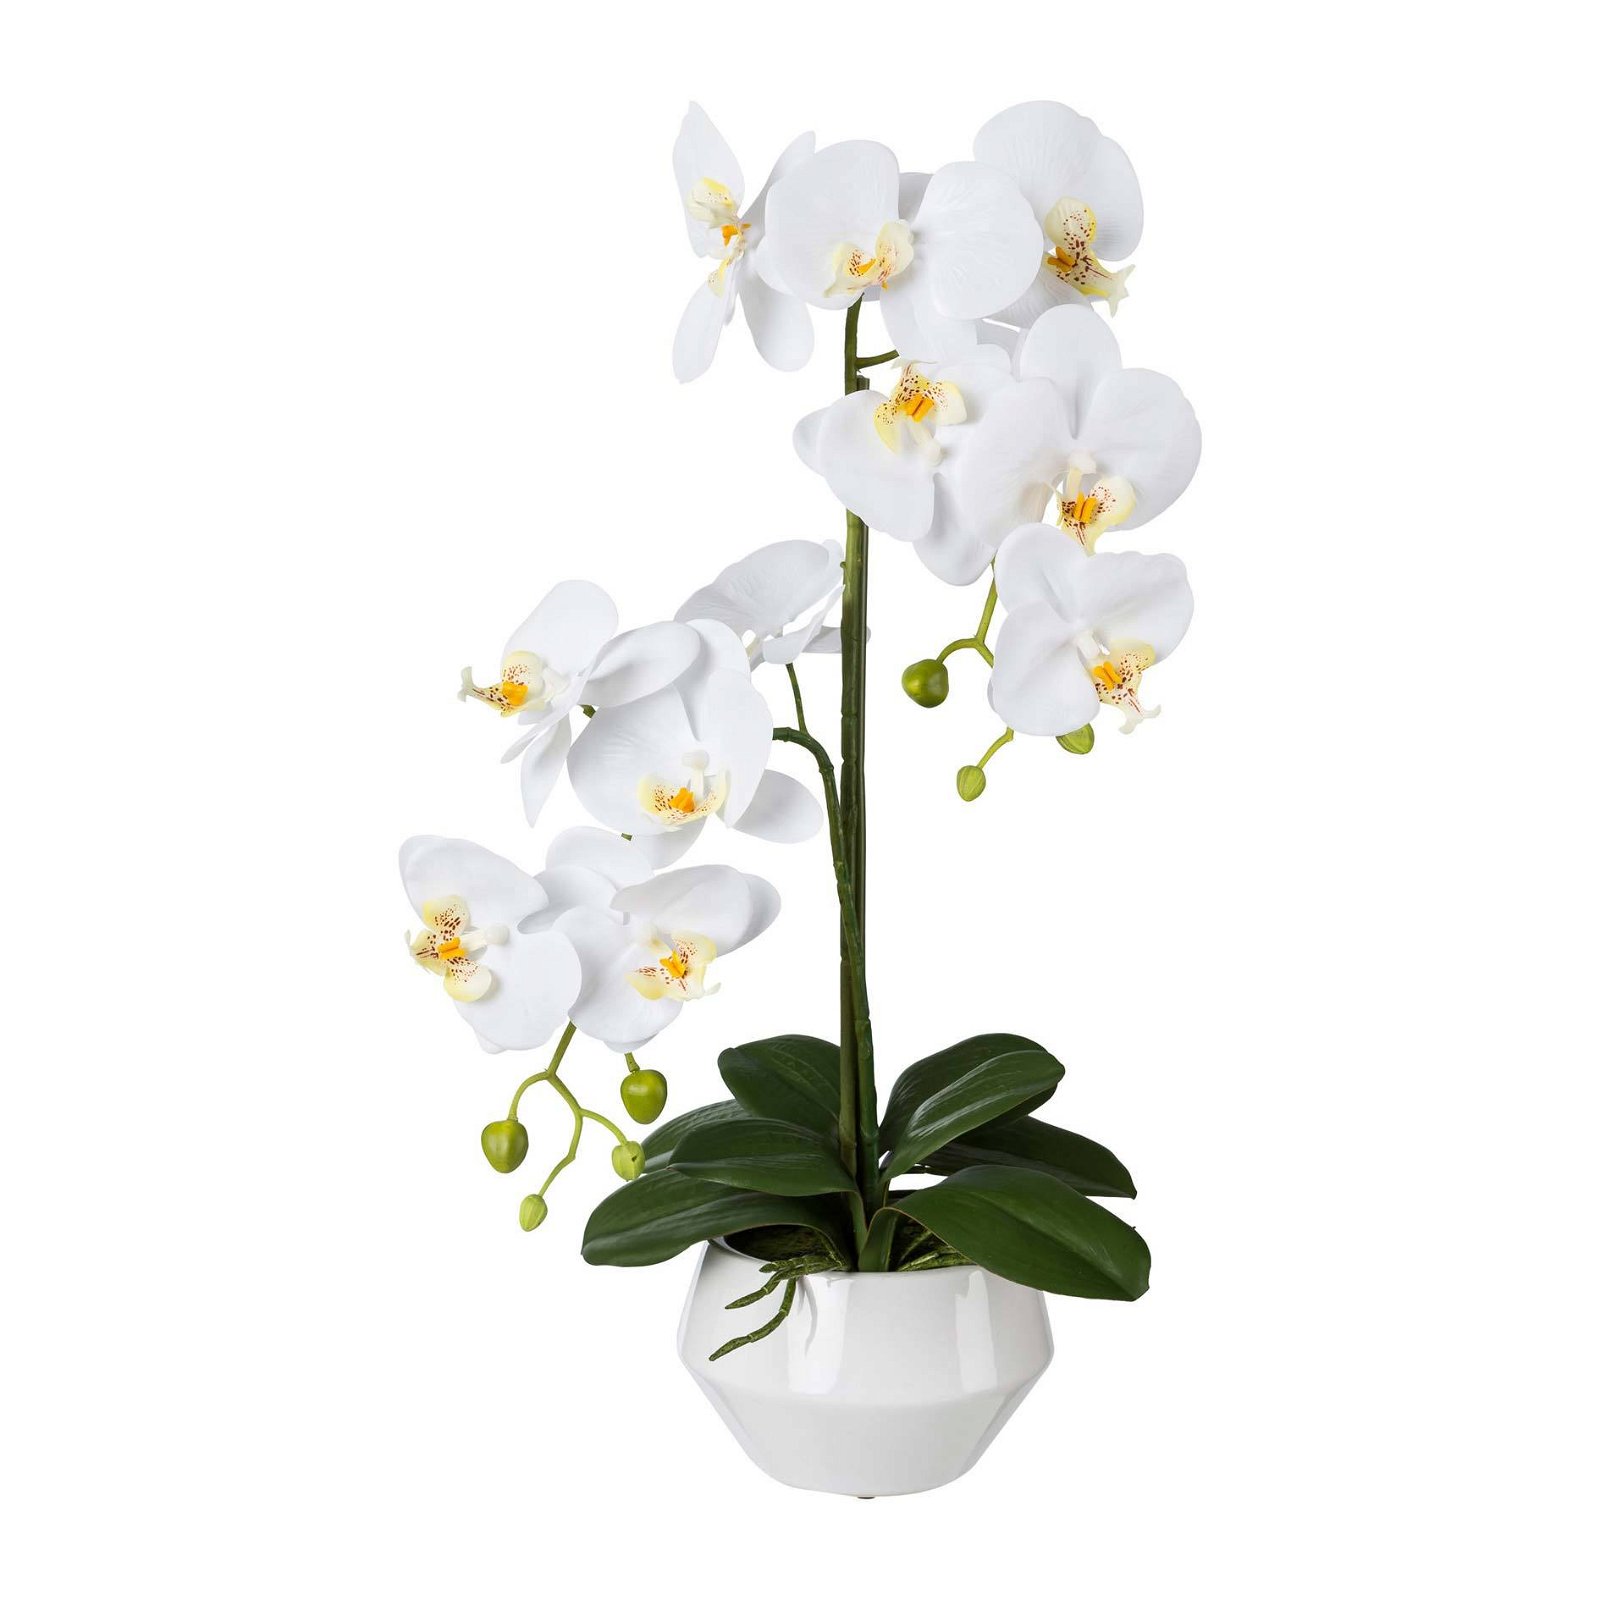 Orchidee Phalaenopsis, künstlich, weiß, ca. 52 cm, weißer Keramiktopf 15 x 9,5 cm